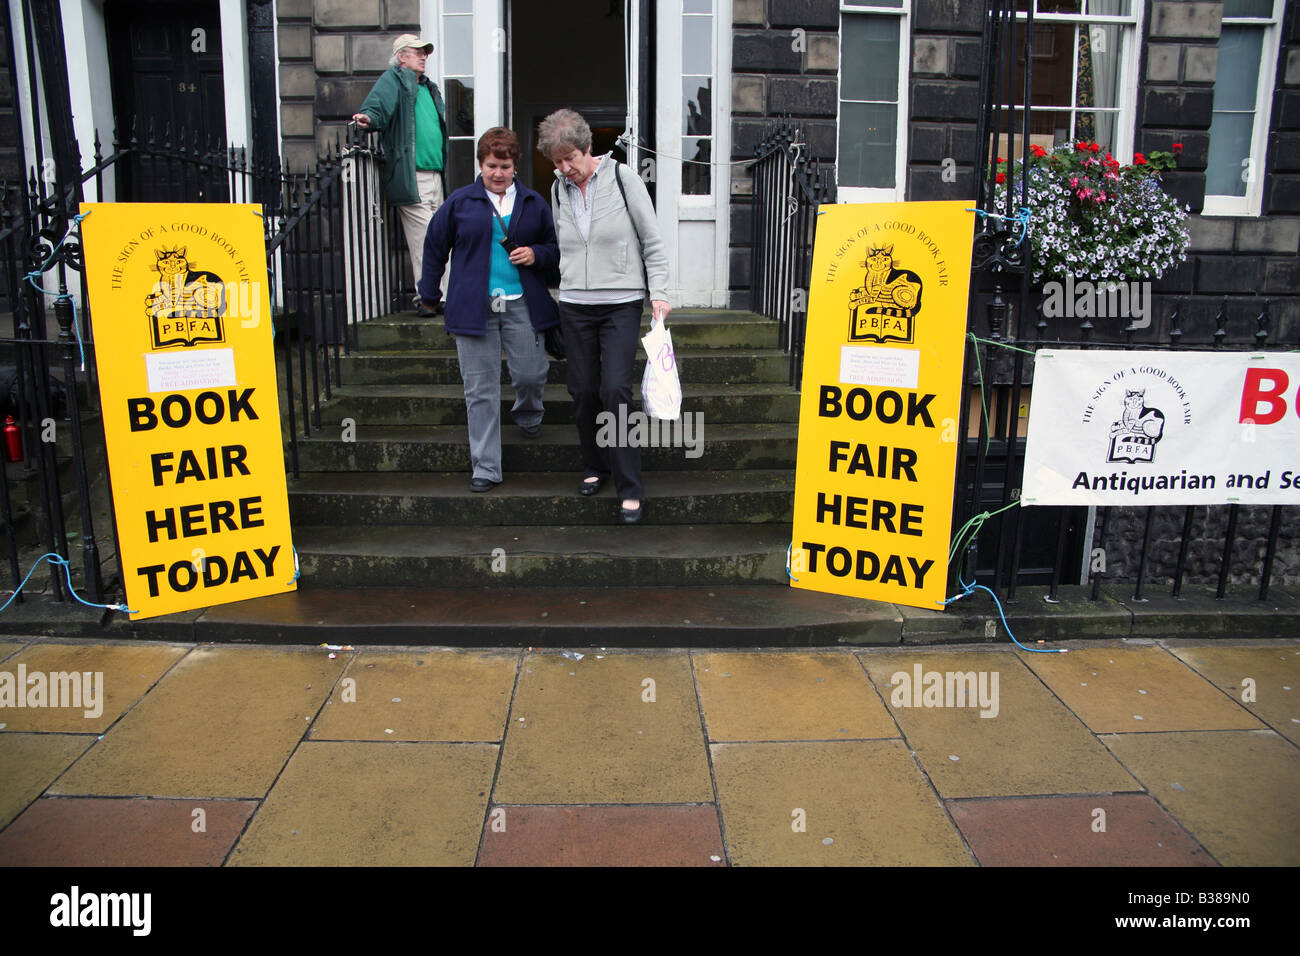 Entrance to a book fair in Edinburgh, Scotland Stock Photo